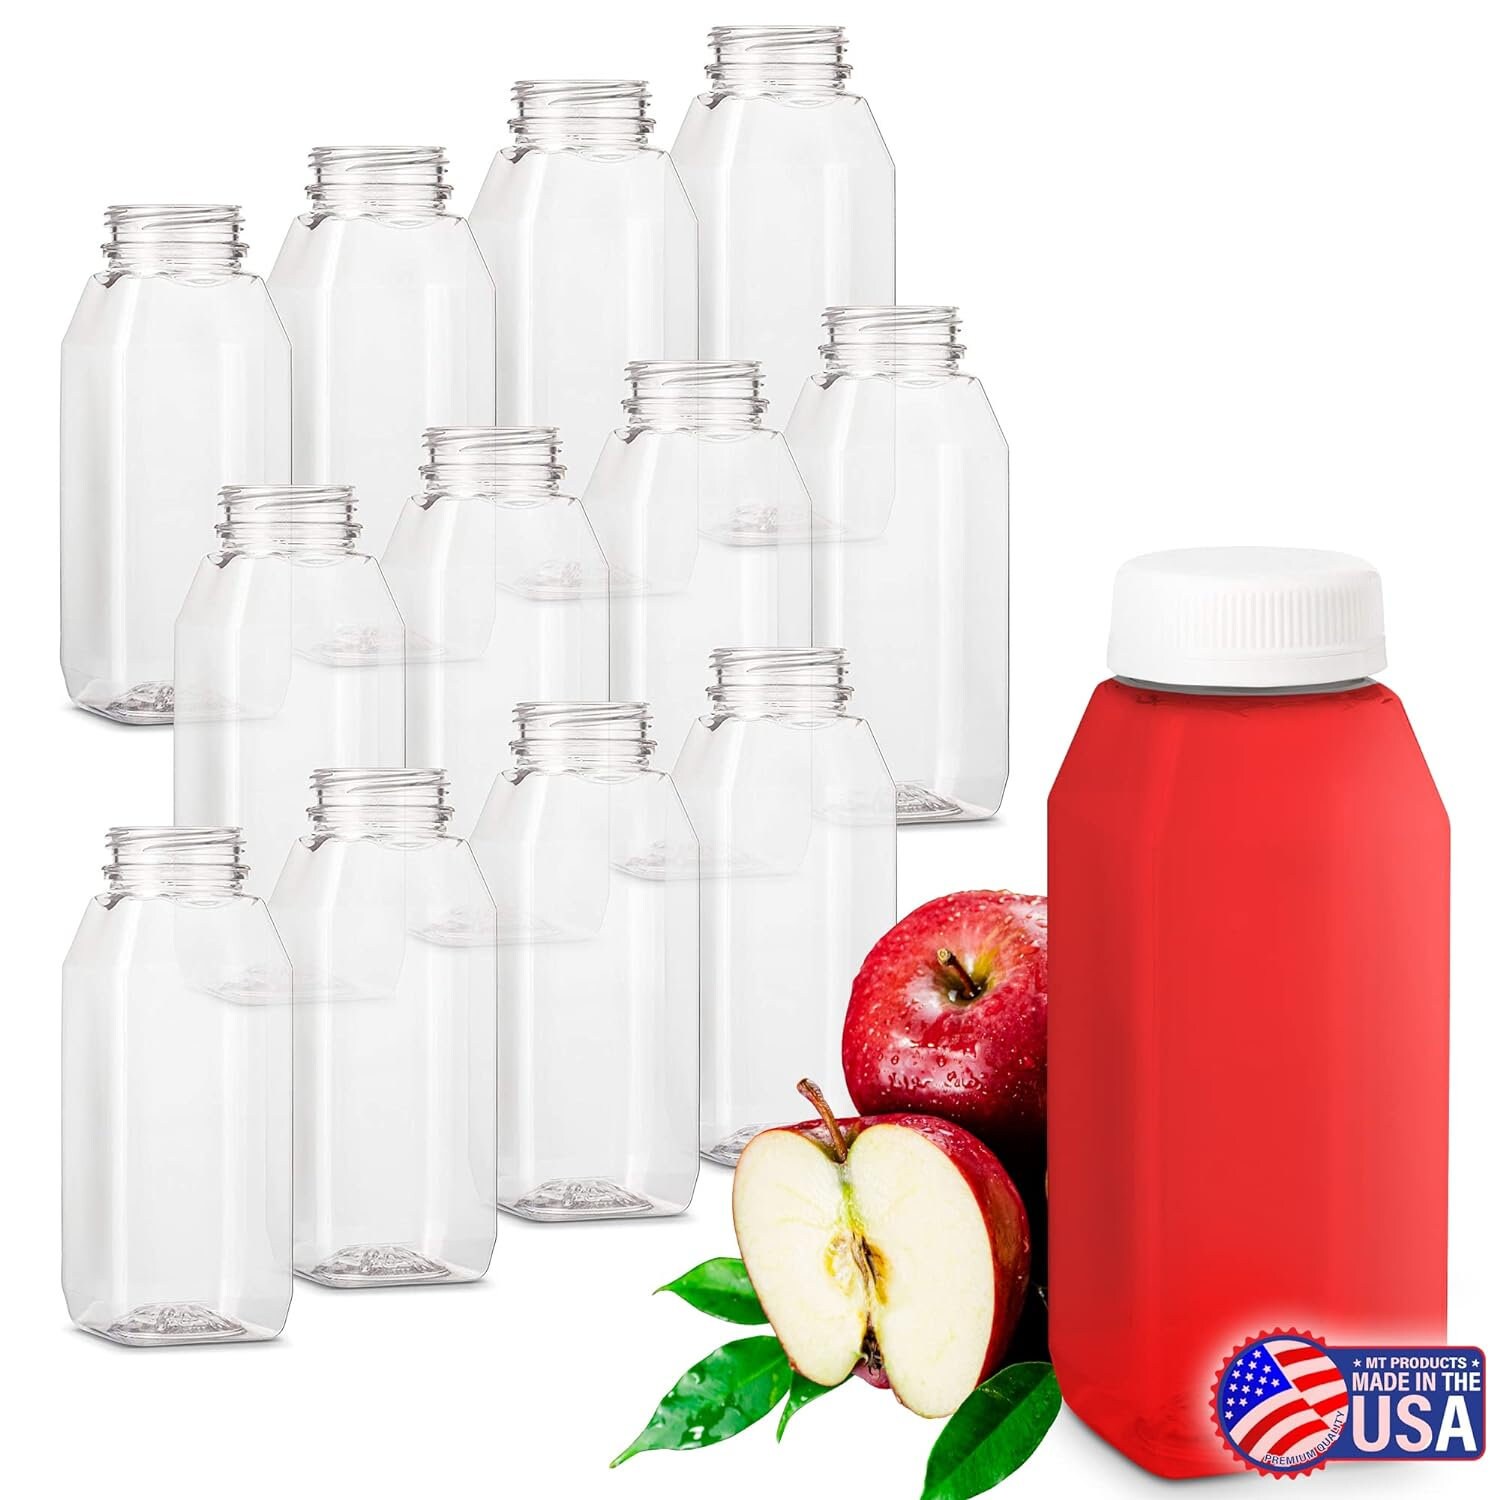 12-OZ Square Plastic Juice Bottles with lids - 100-CT